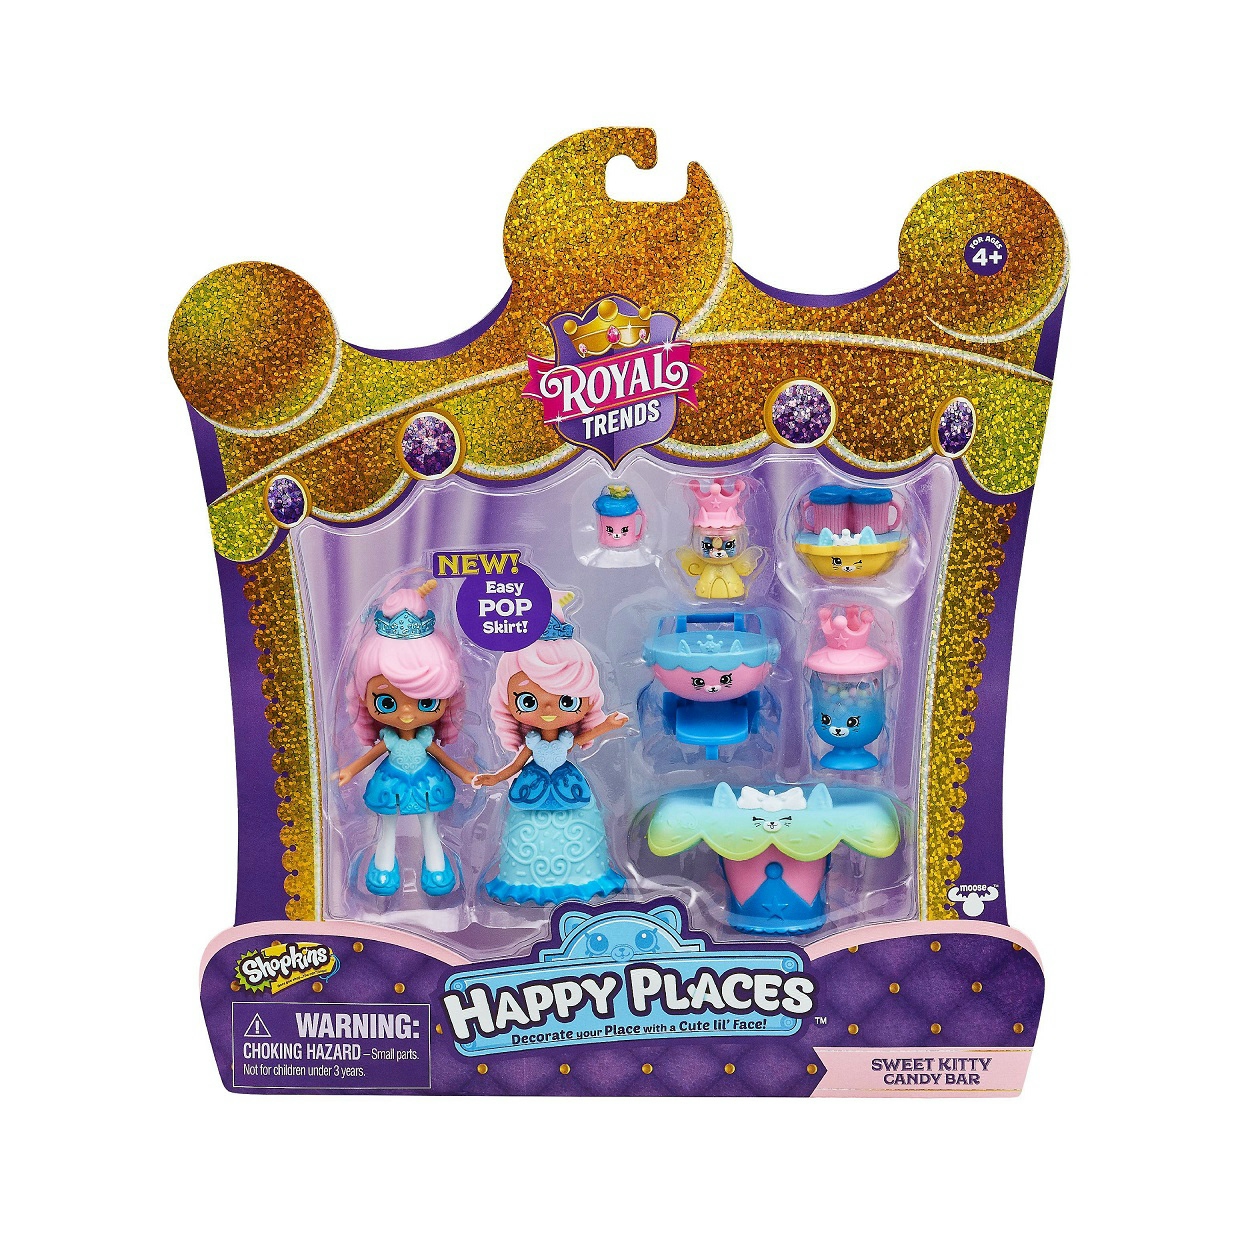 Happy Places királyi dekoráló szett - Sweet Kitty Candy Bar